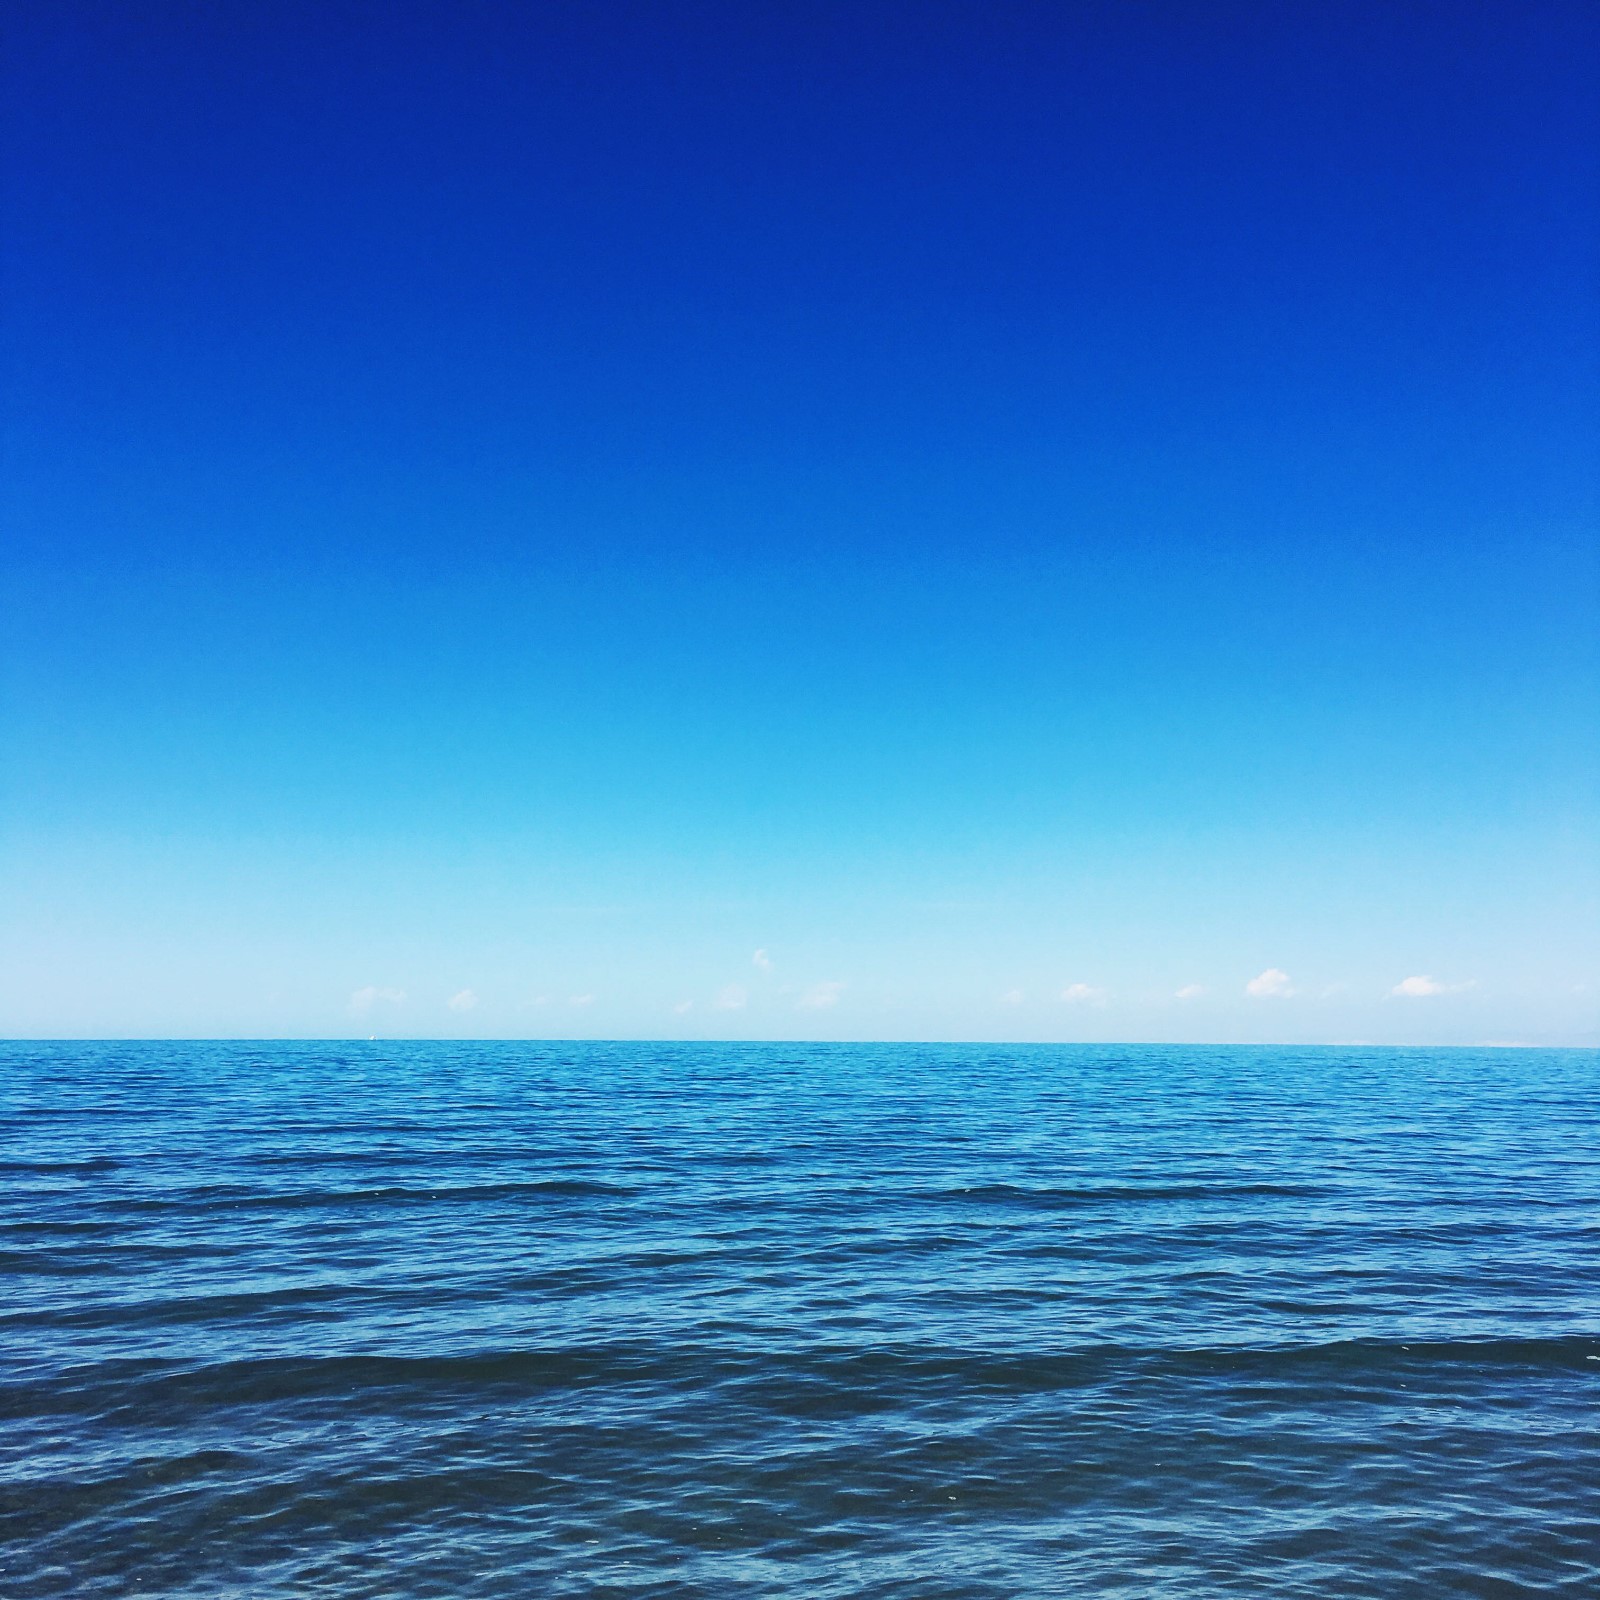 青海湖,它犹如浩瀚的大海,一望无际,美丽无比.